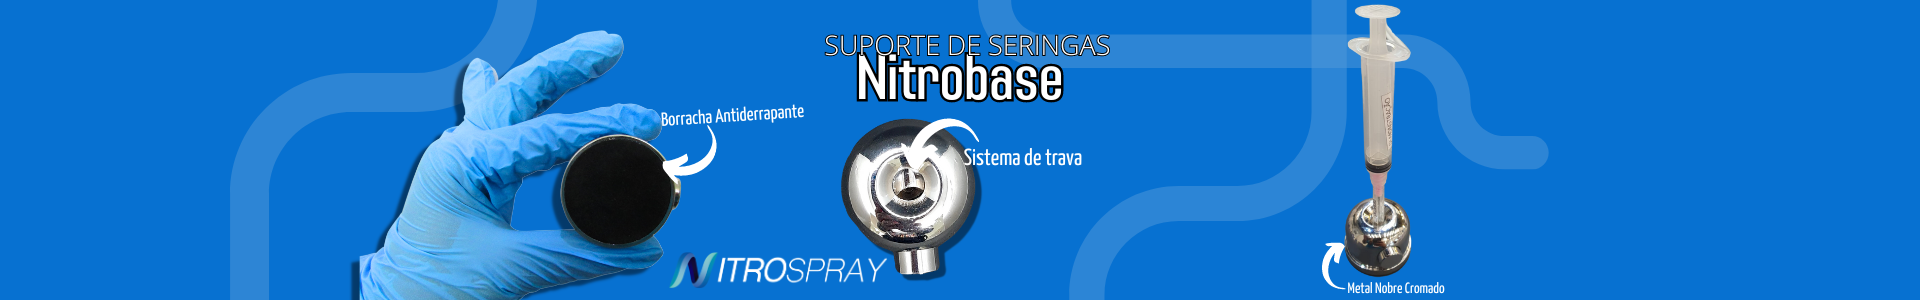 Nitrobase